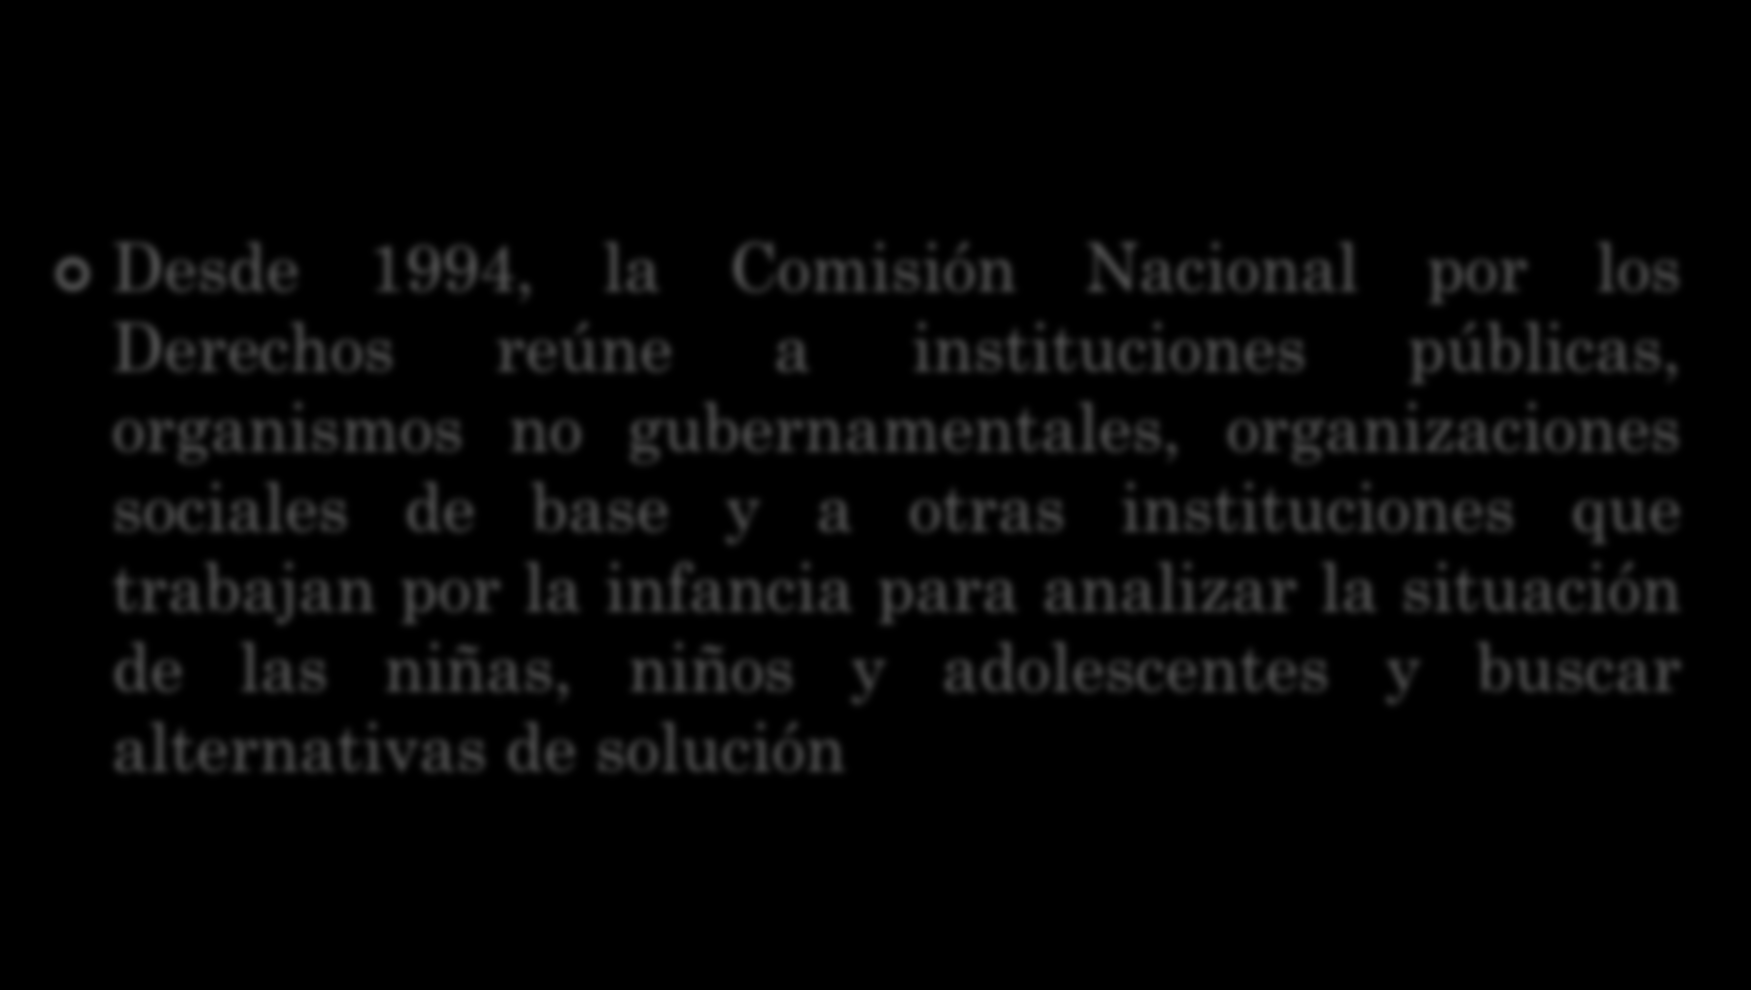 Desde 1994, la Comisión Nacional por los Derechos reúne a instituciones públicas, organismos no gubernamentales, organizaciones sociales de base y